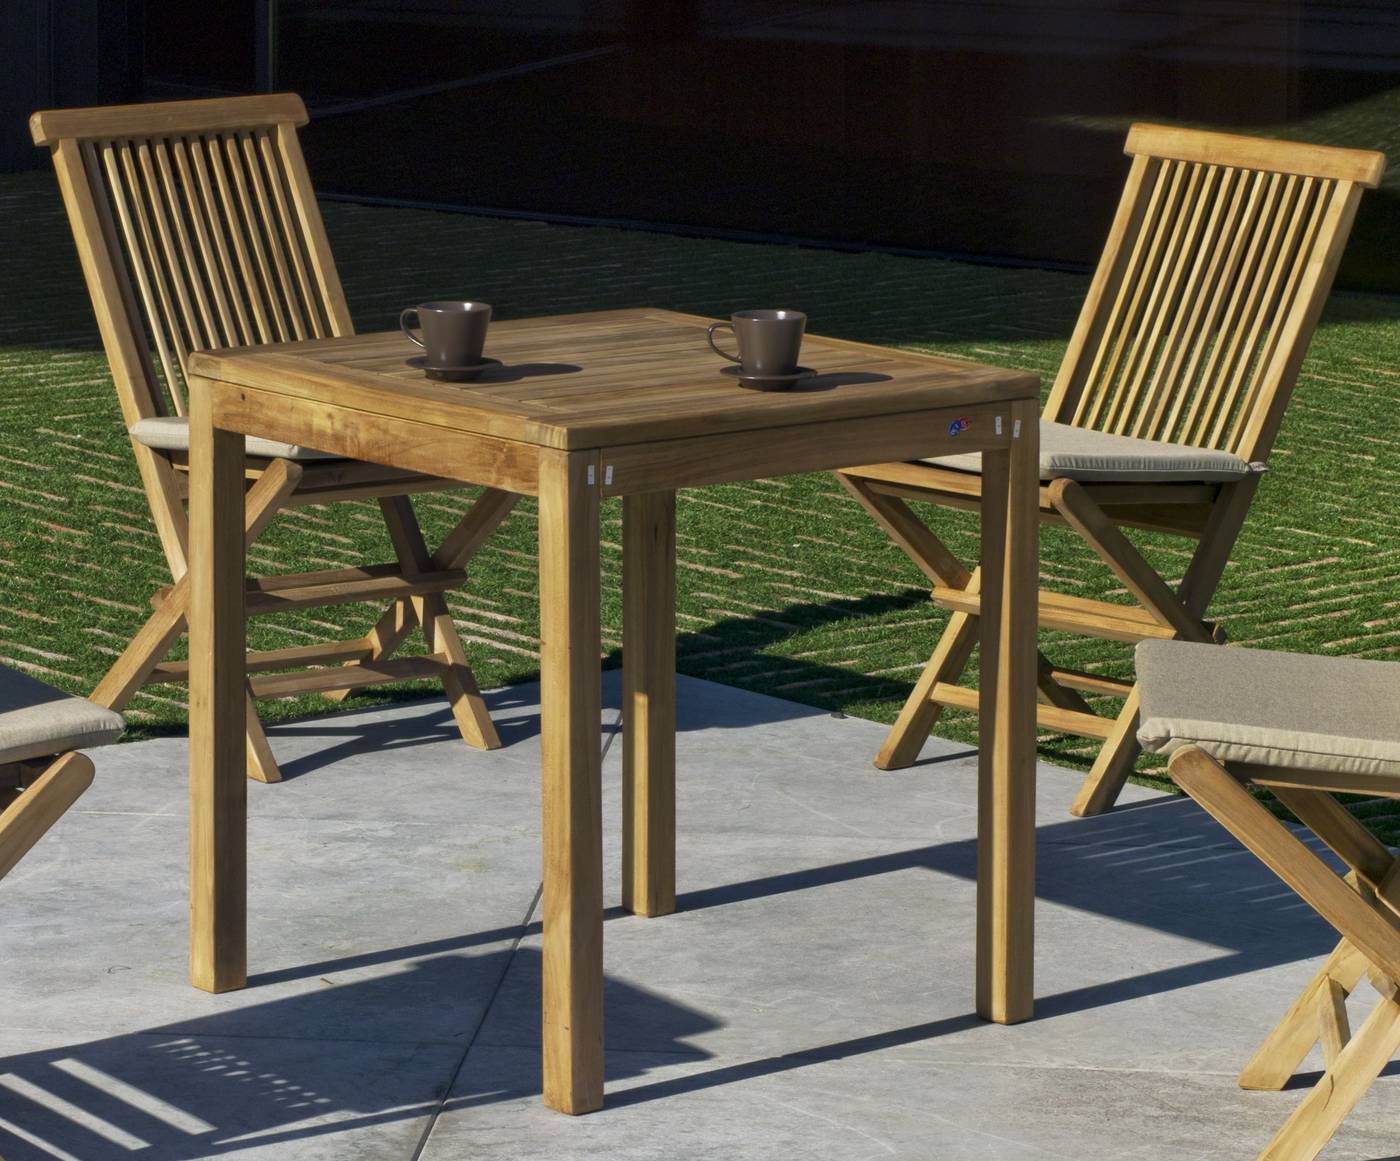 Conjunto Teka Bistro/Seroni 70-4 - Conjunto de madera de teka maciza para jardín o terraza: 1 mesa cuadrada 70x70 cm. + 4 sillas con cojines asiento